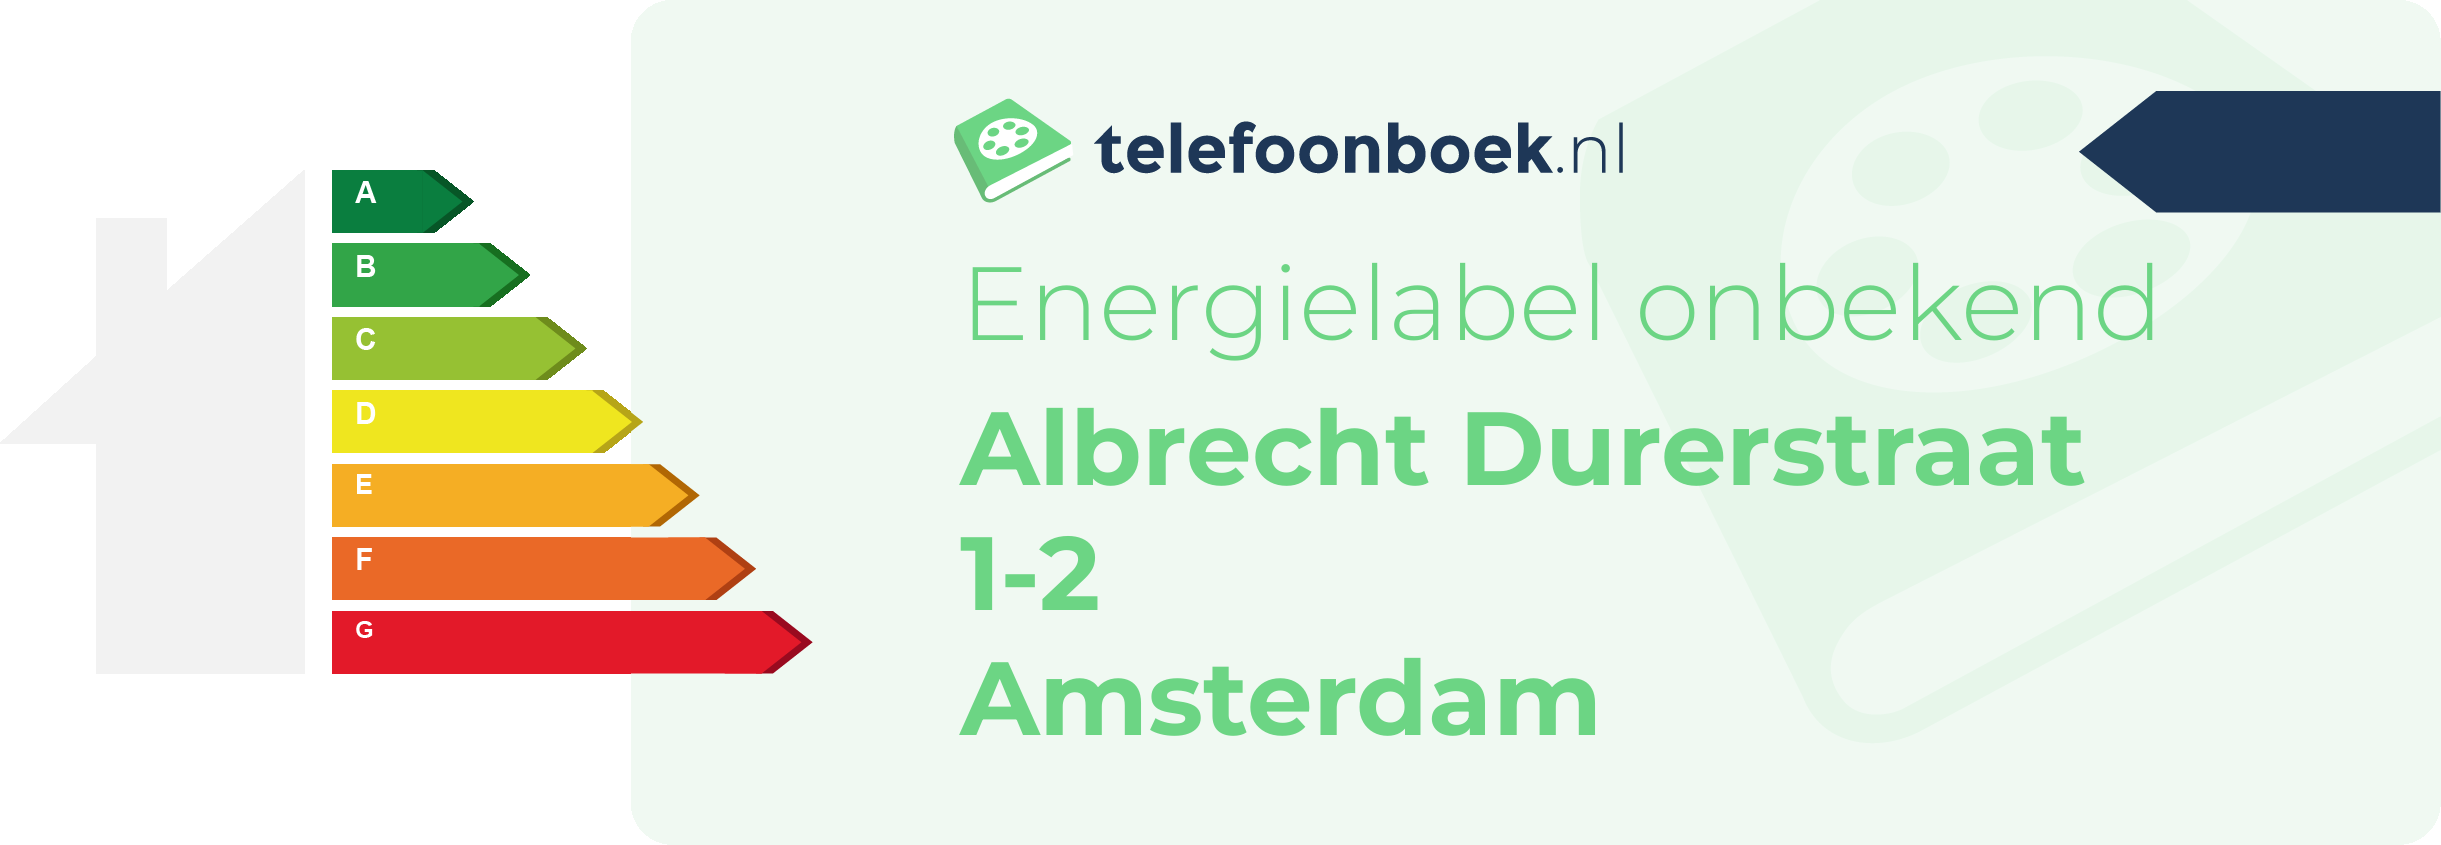 Energielabel Albrecht Durerstraat 1-2 Amsterdam